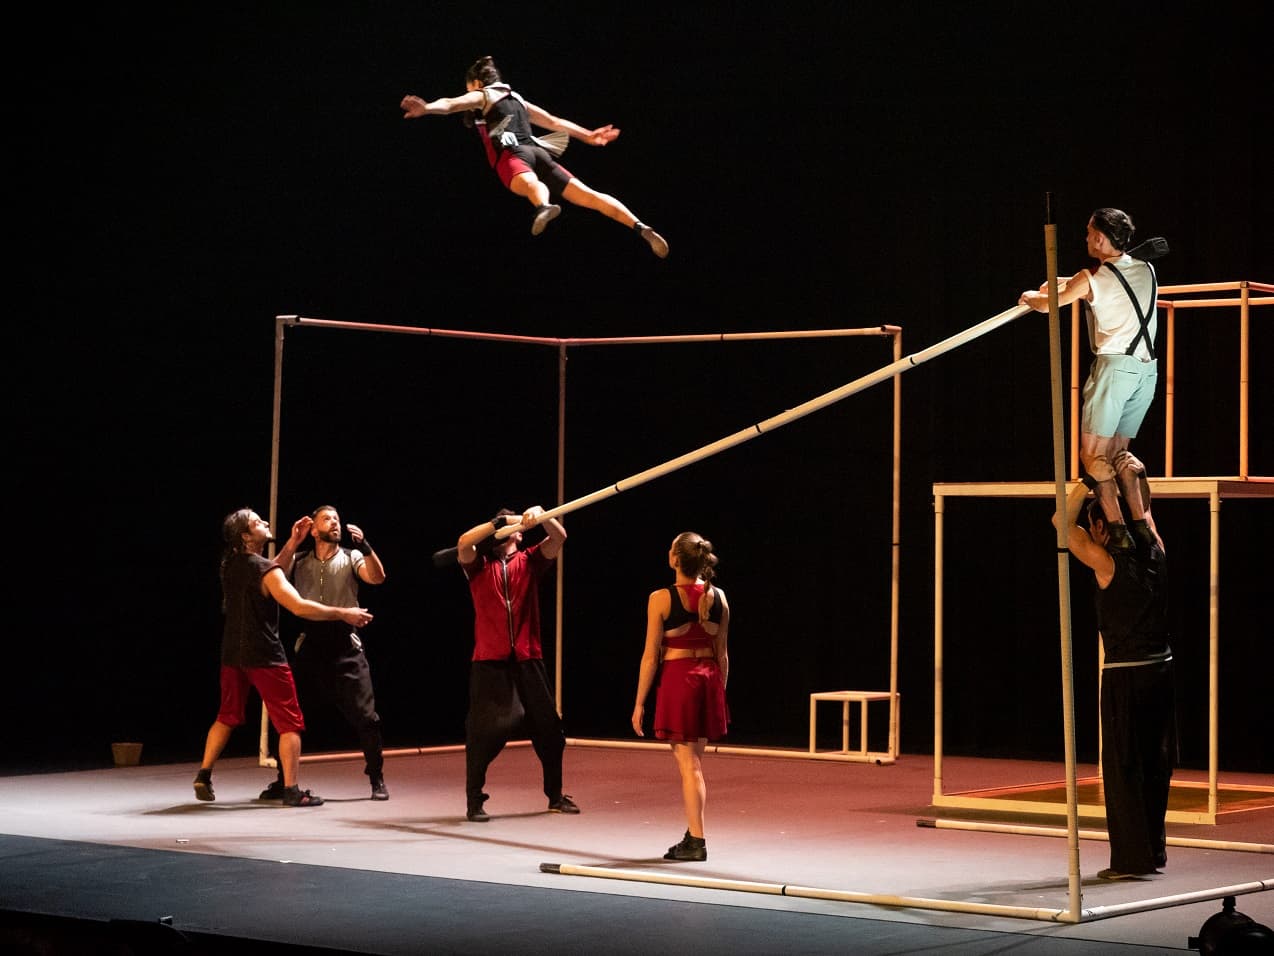 El Teatro Chapí vuelve a subir el telón con el espectáculo de circo “ÁUREO